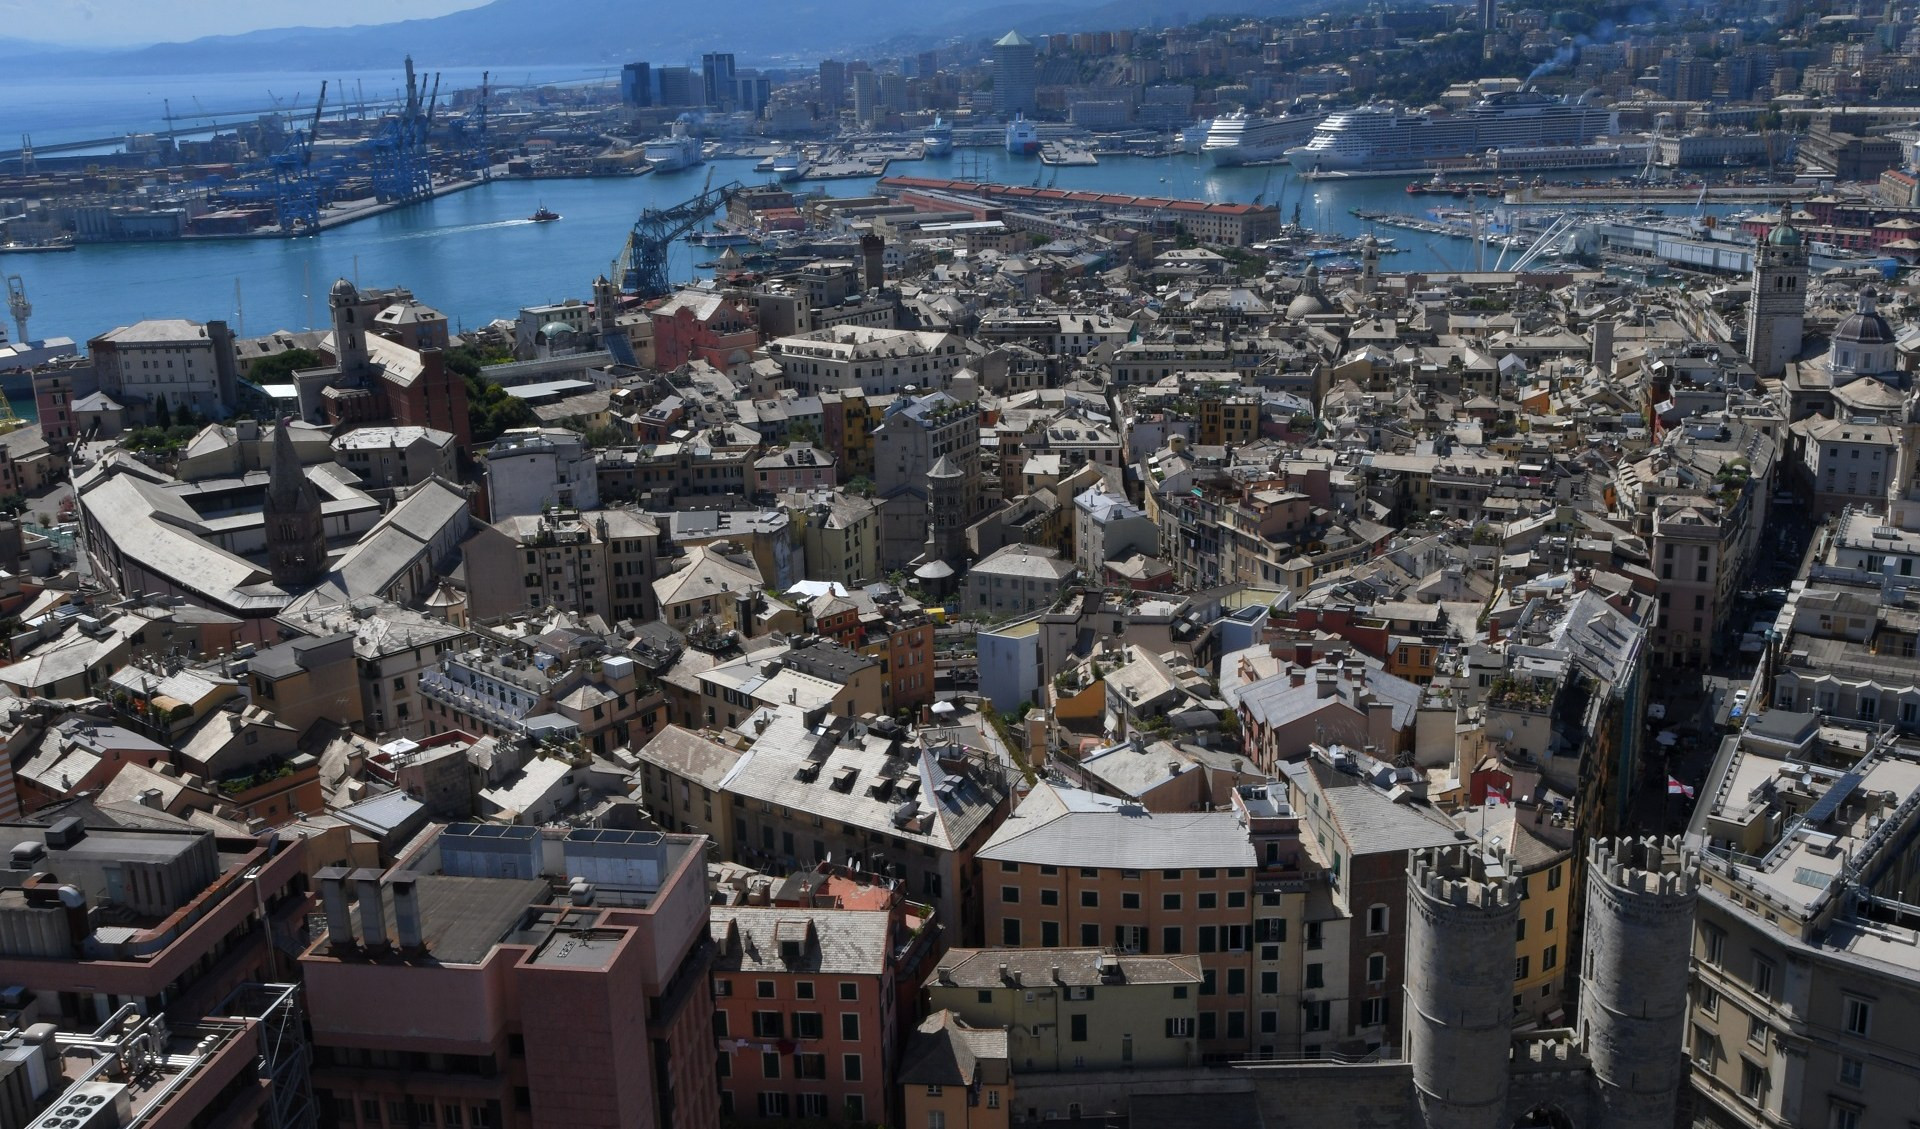 Le diseguaglianze (in)visibili di Genova, dalle 21 su Primocanale con Sant'Egidio